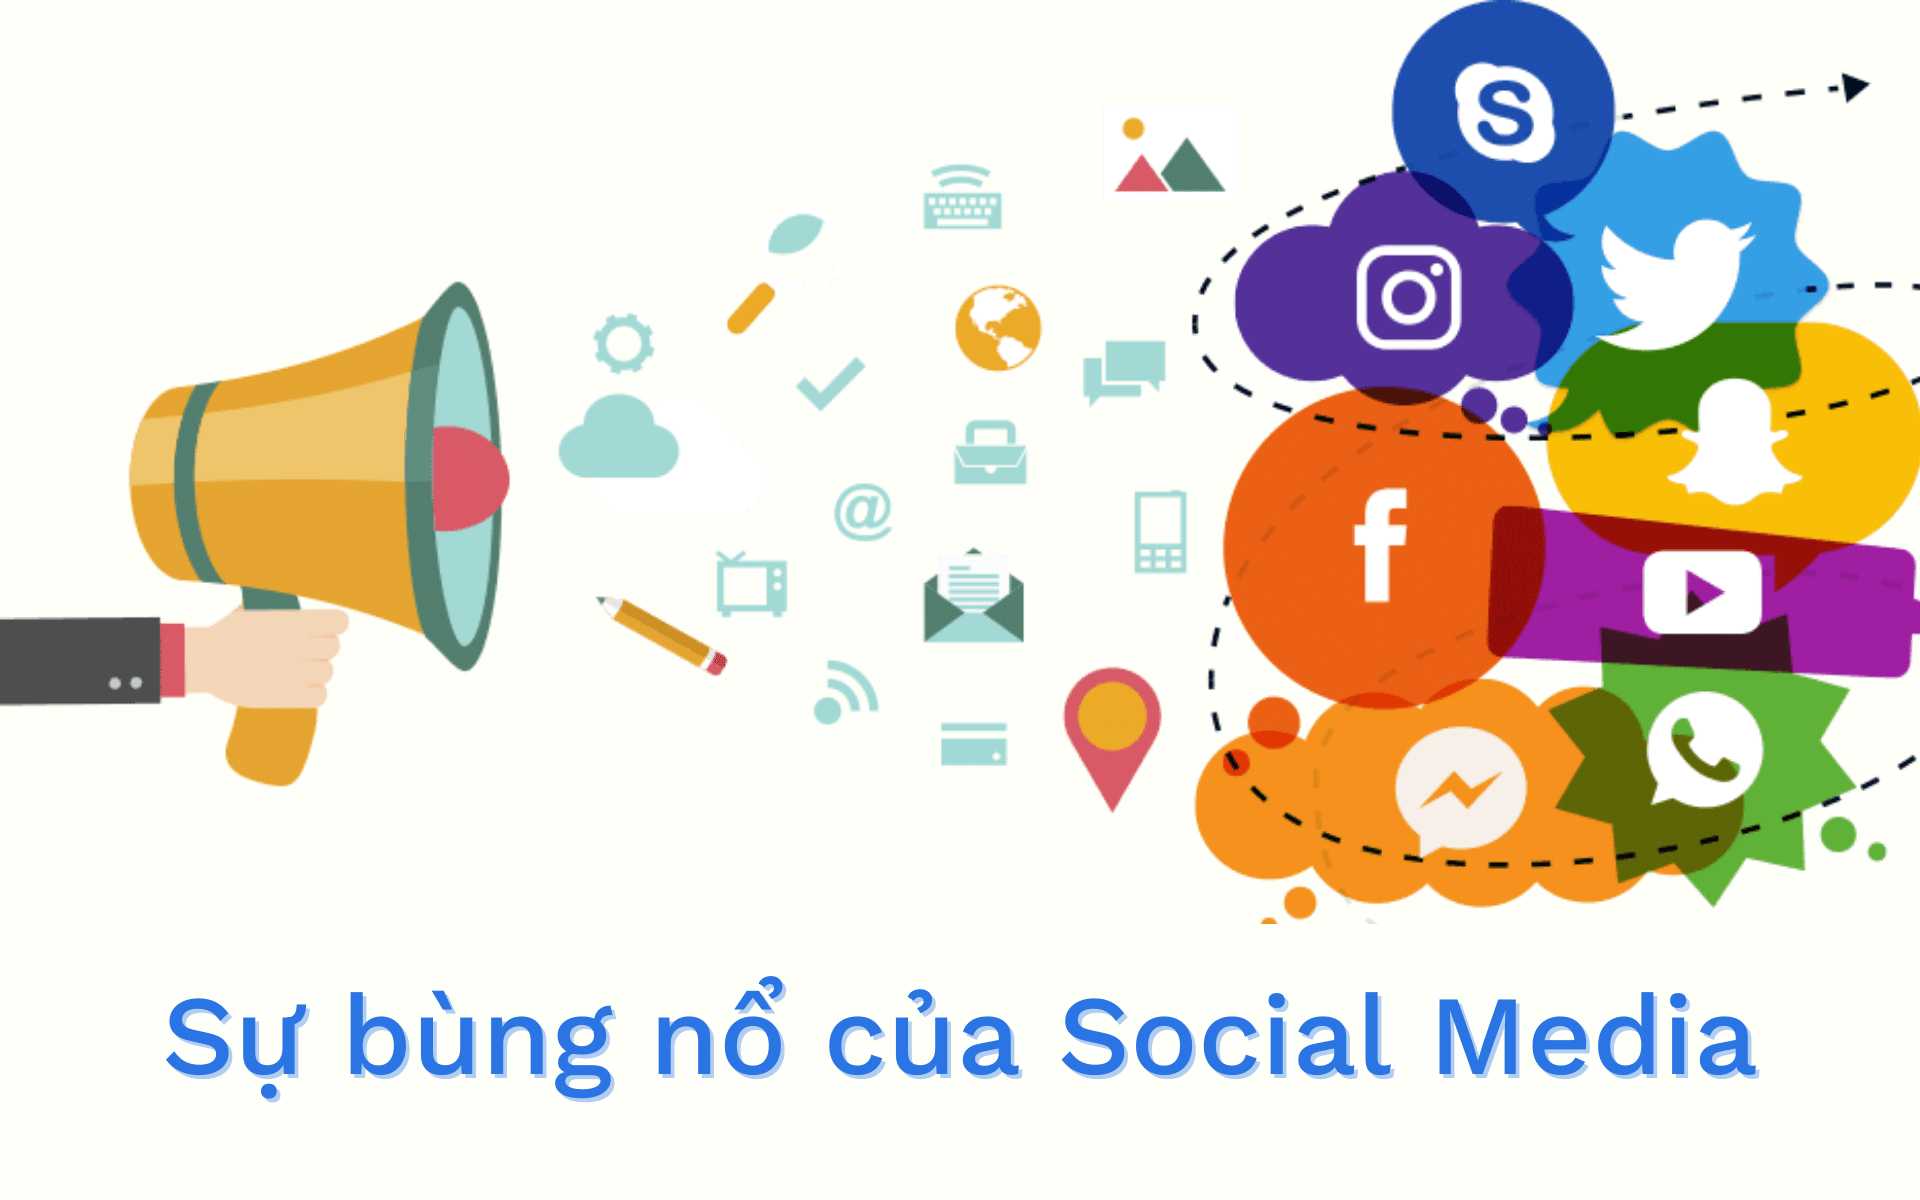 Social-Commerce-la-gi-3-xu-huong-Social-Commerce-trong-nam-2021-hinh2